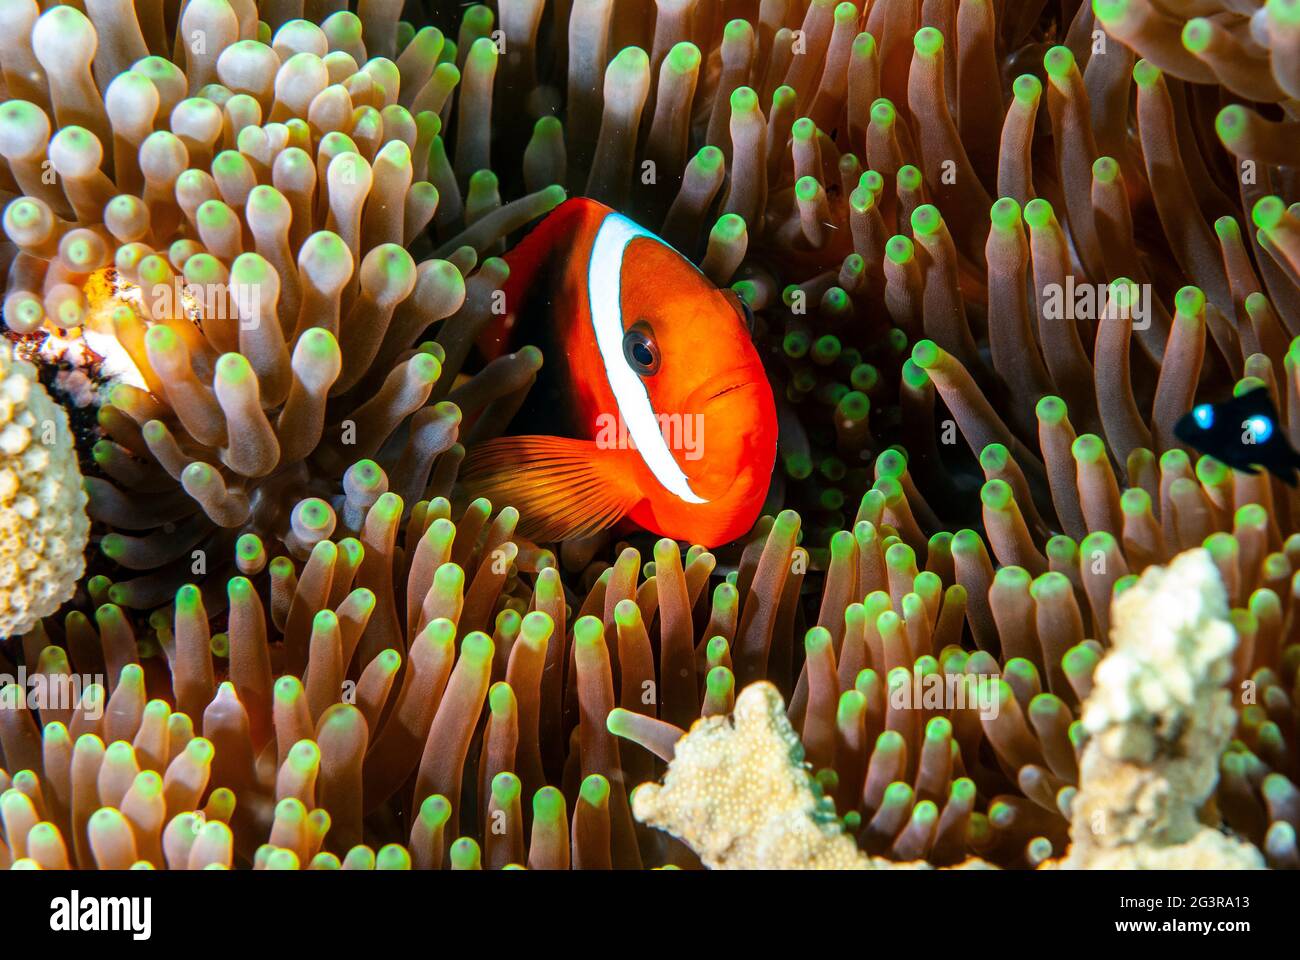 Anemonefish femminile di pomodoro (Amphiprion frenatus) su ospite anemone, Isole Salomone Foto Stock